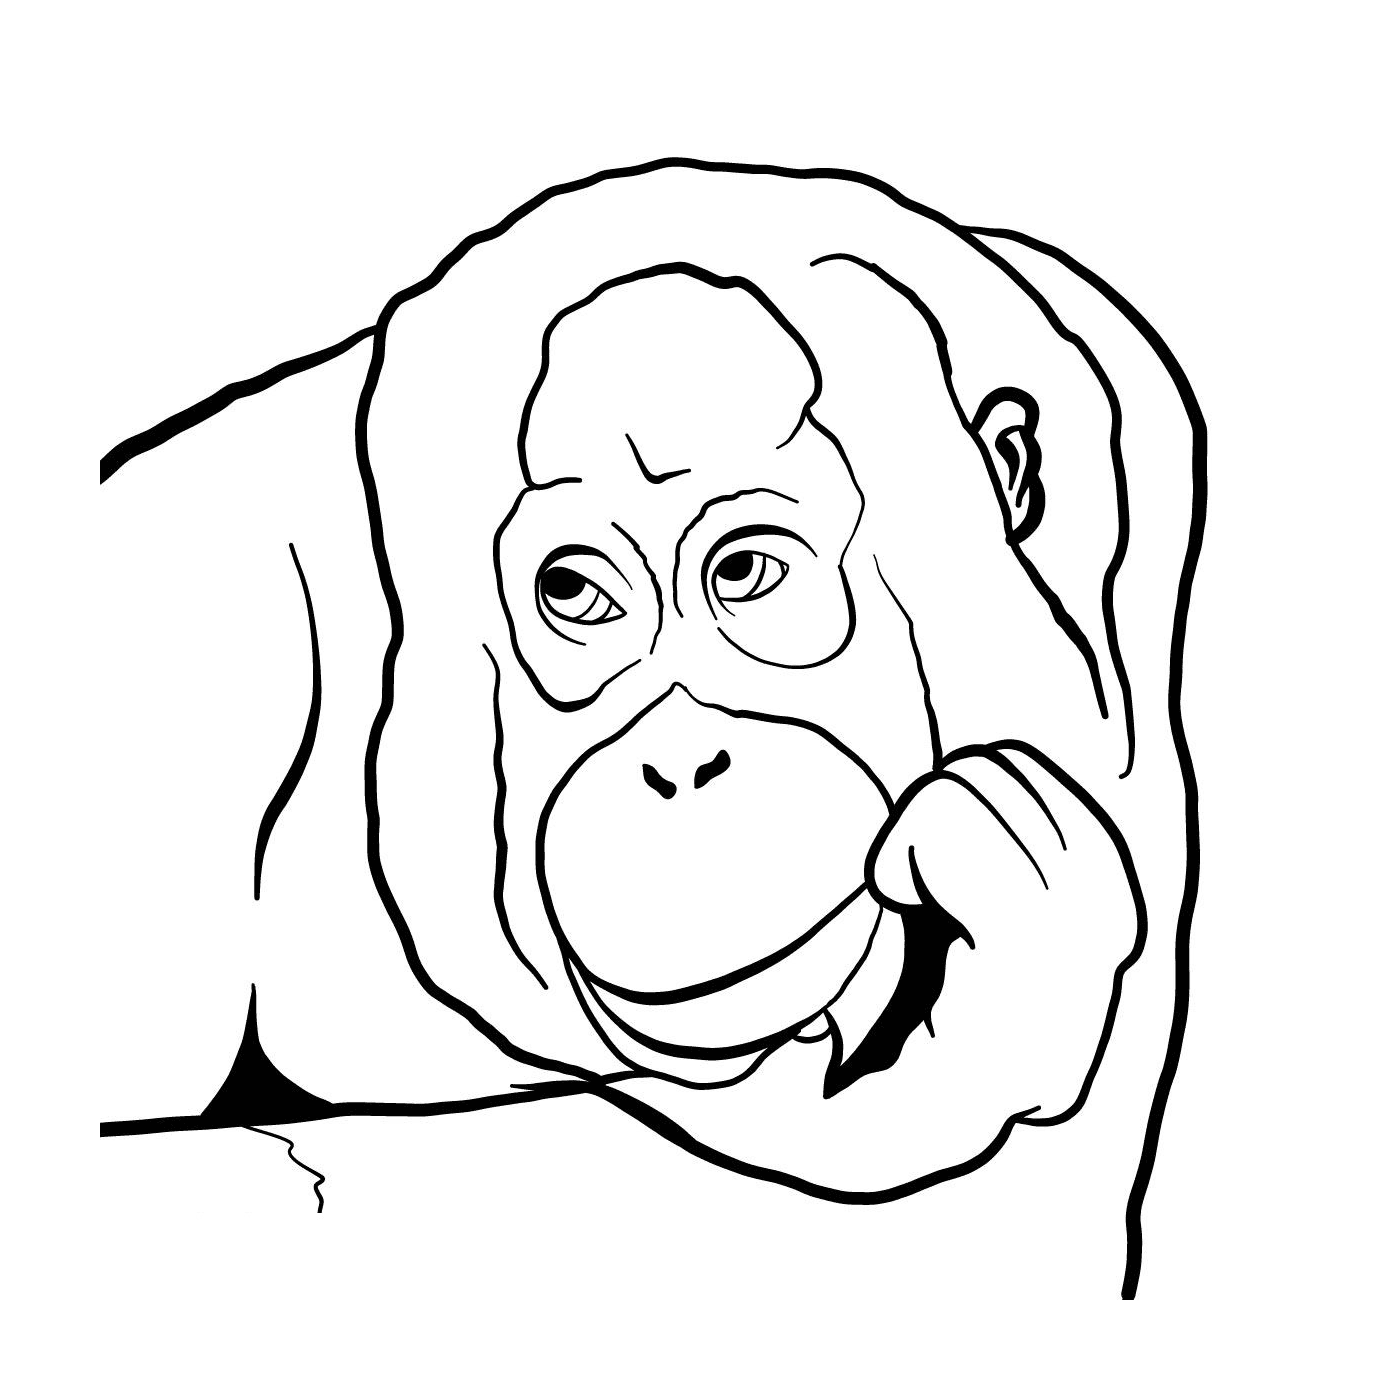  Um gorila 